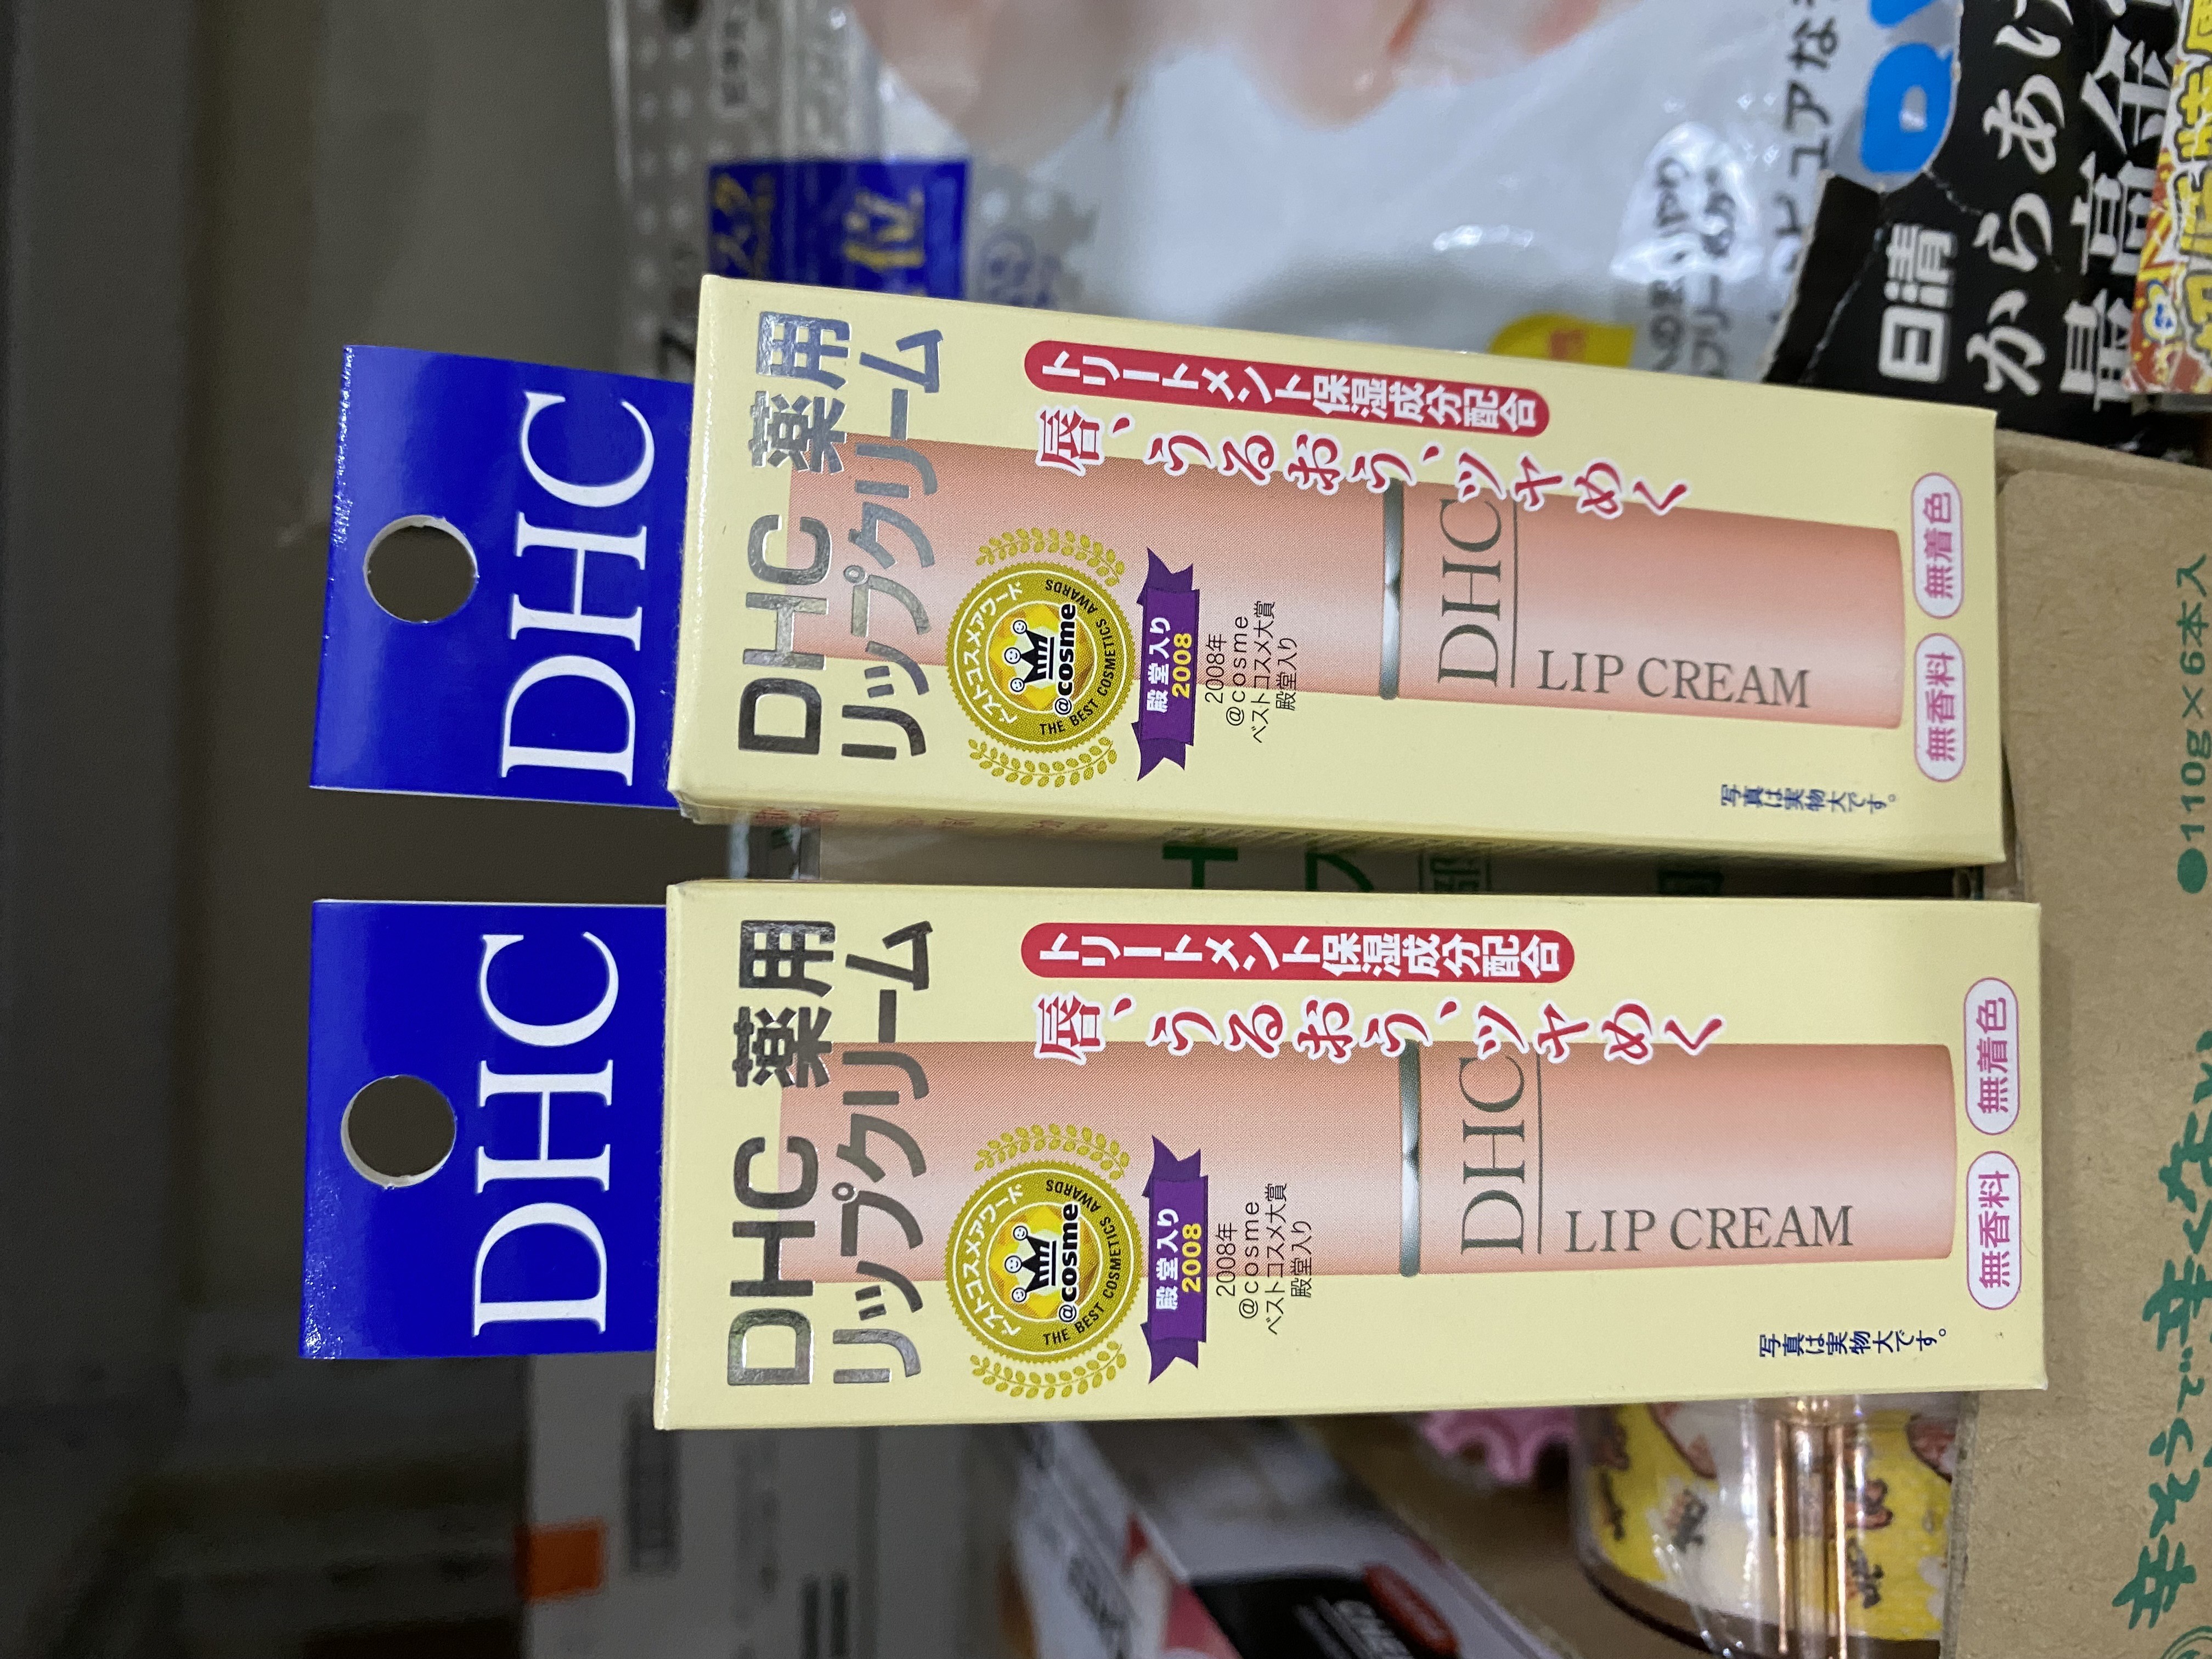 日本DHC橄欖油護唇膏 Lip Cream 1.5g